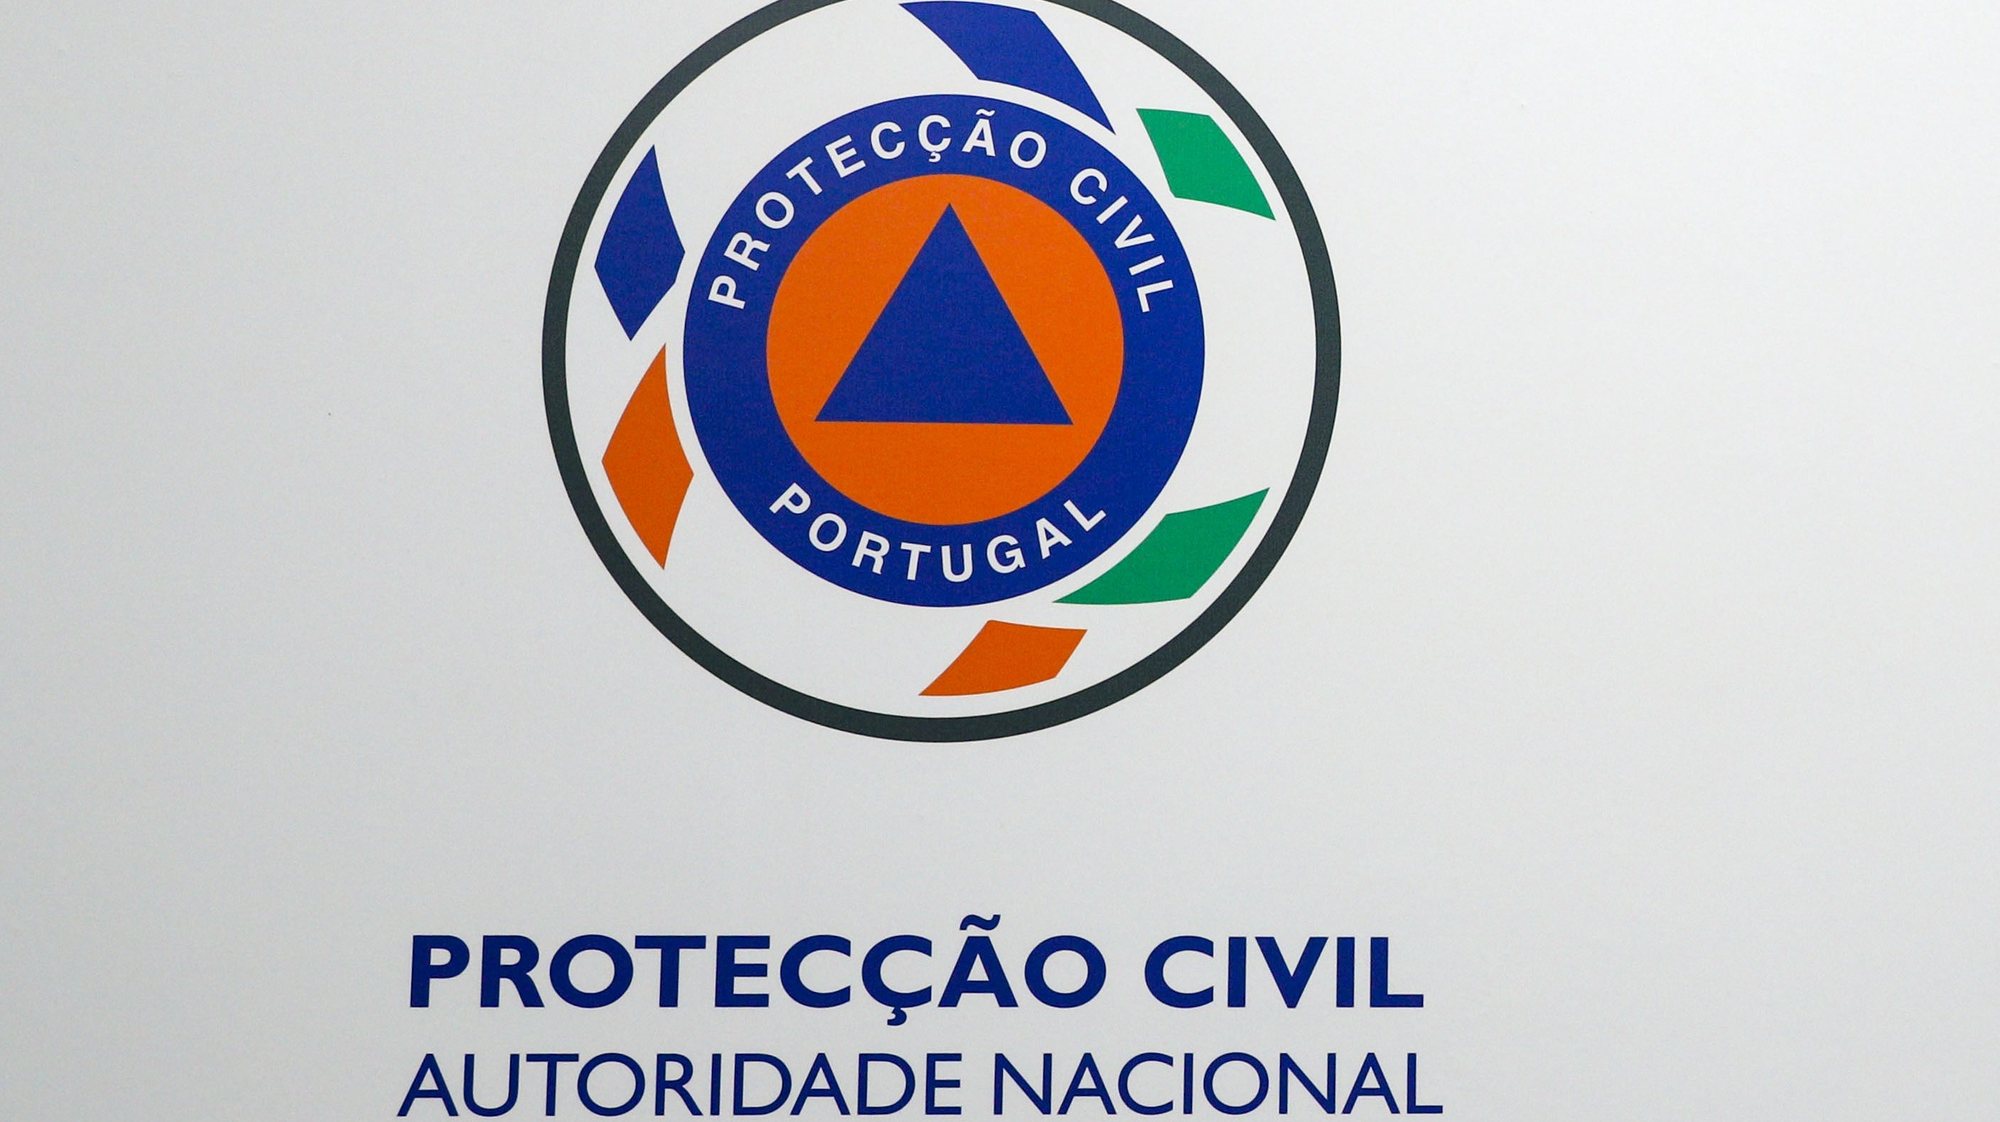 Logotipo da Protecção Civil, Carnaxide, 02 de outubro de 2019. ANTÓNIO COTRIM/LUSA